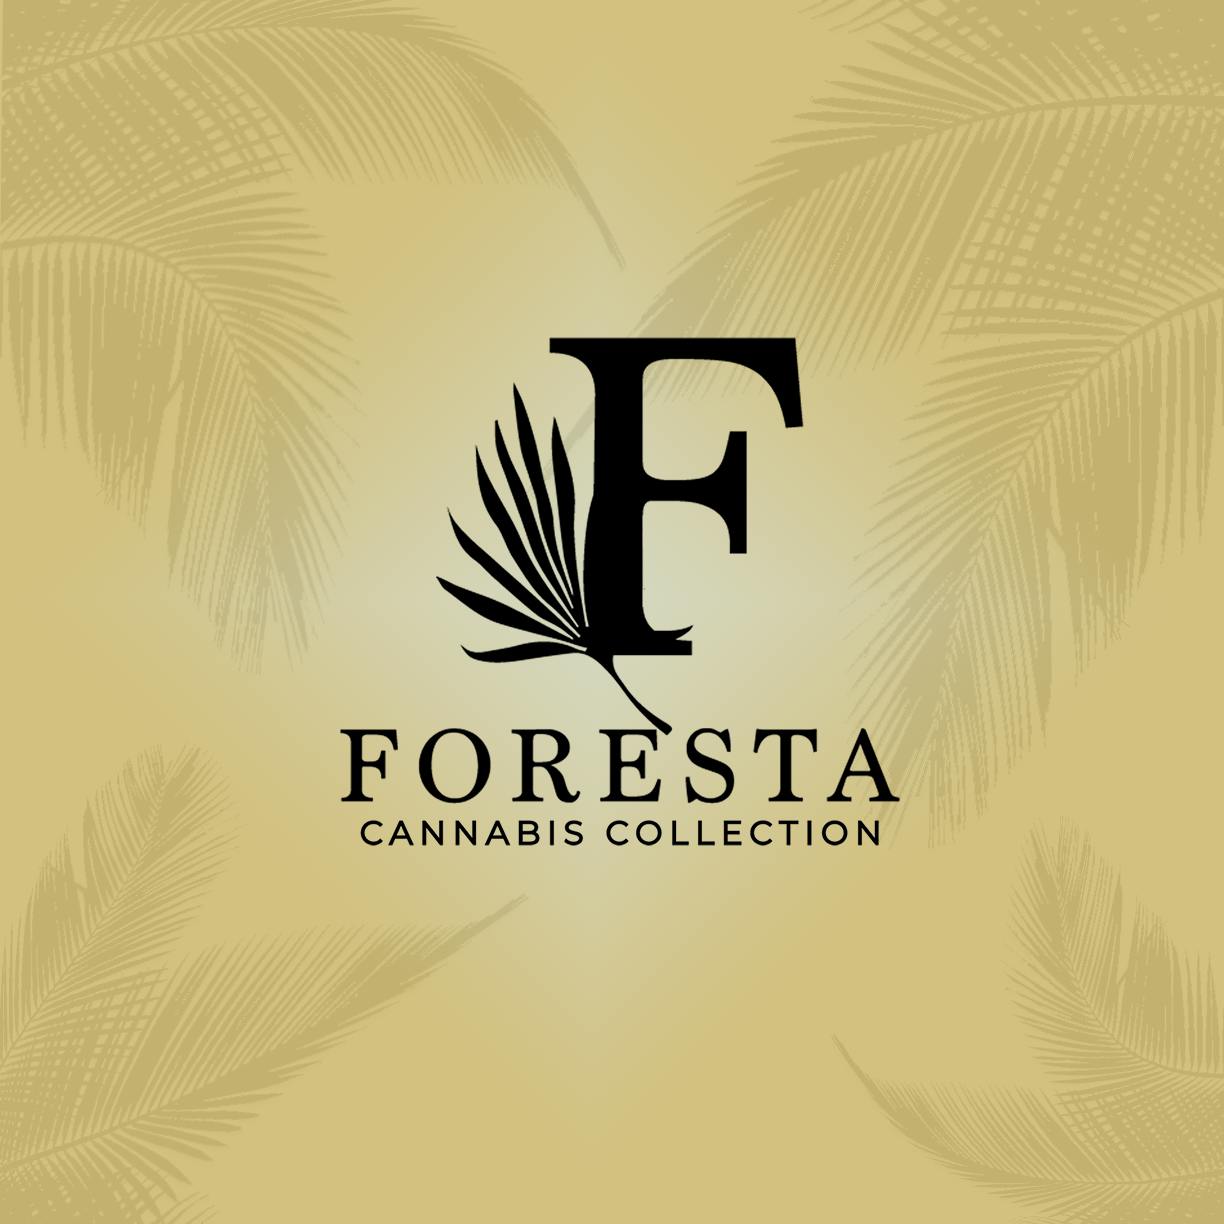 Foresta Cannabis Collection logo